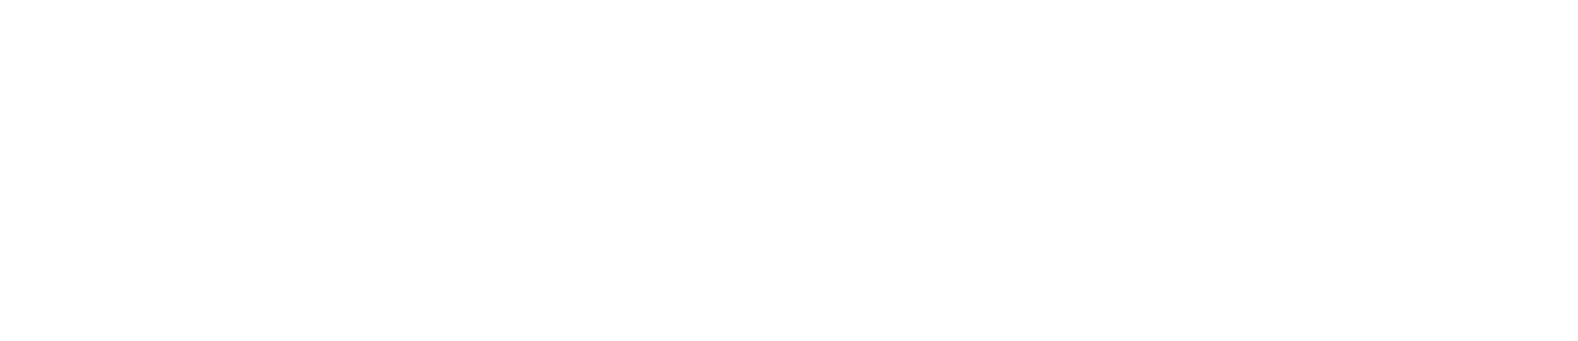 Caleres logo large for dark backgrounds (transparent PNG)